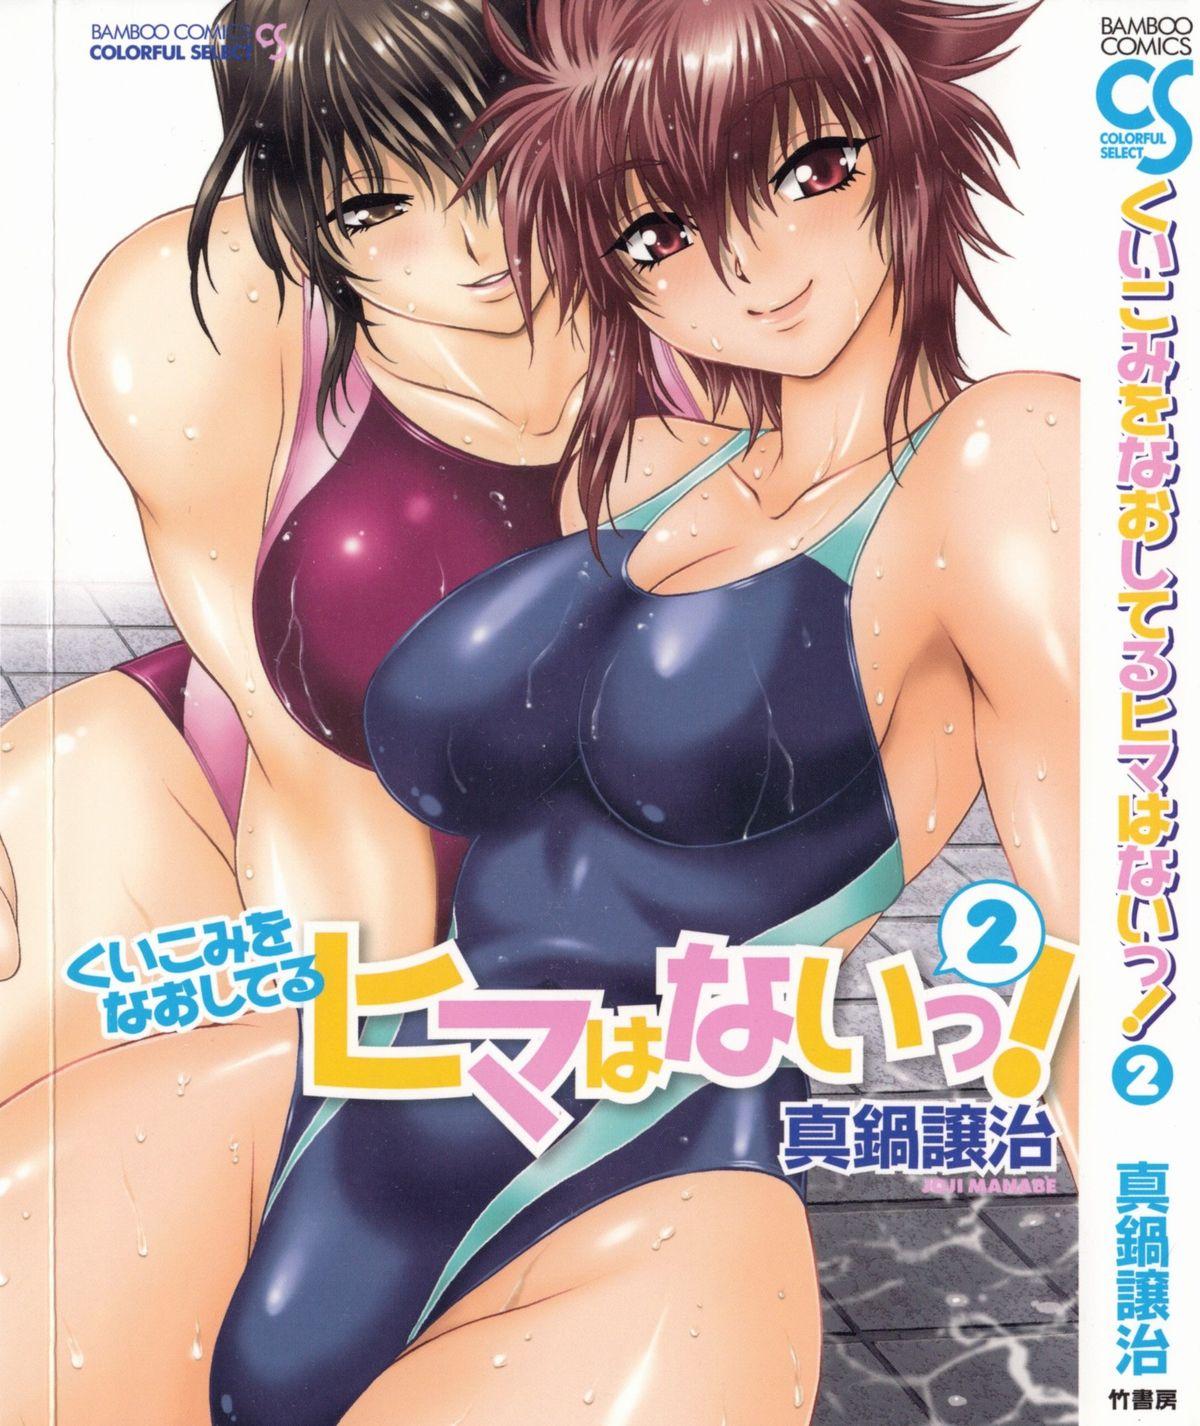 Cocksucker Kuikomi wo Naoshiteru Hima wa Nai! Vol. 2 Pounded - Picture 1